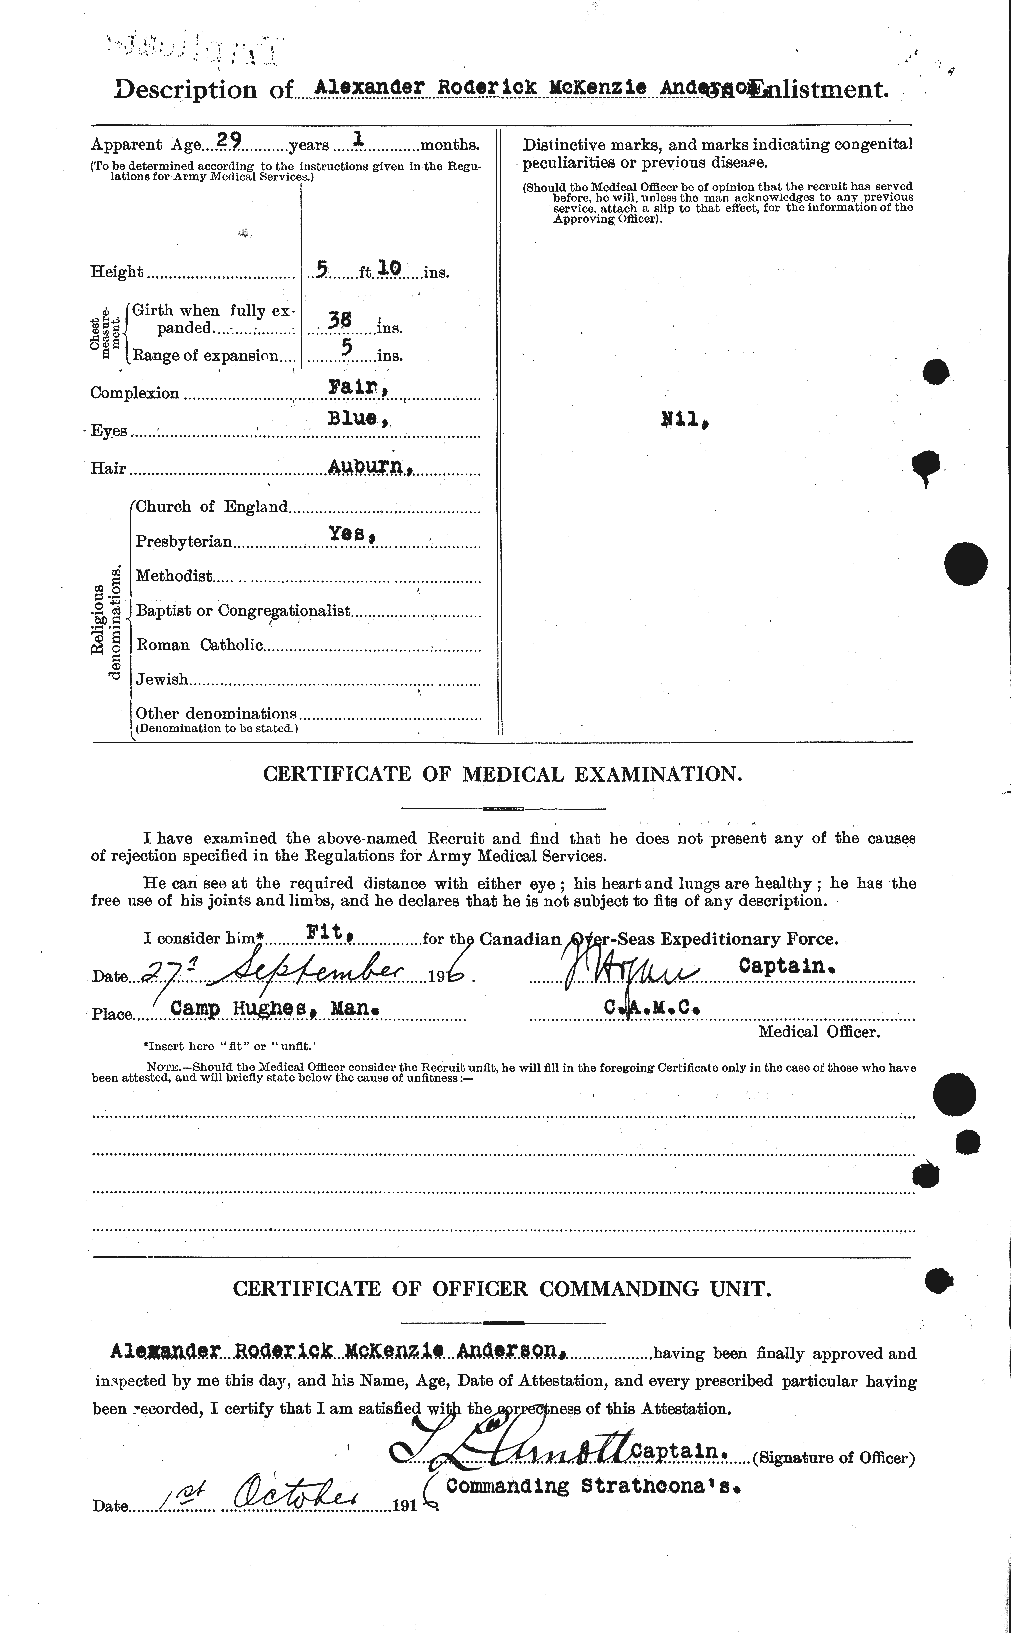 Dossiers du Personnel de la Première Guerre mondiale - CEC 209476b